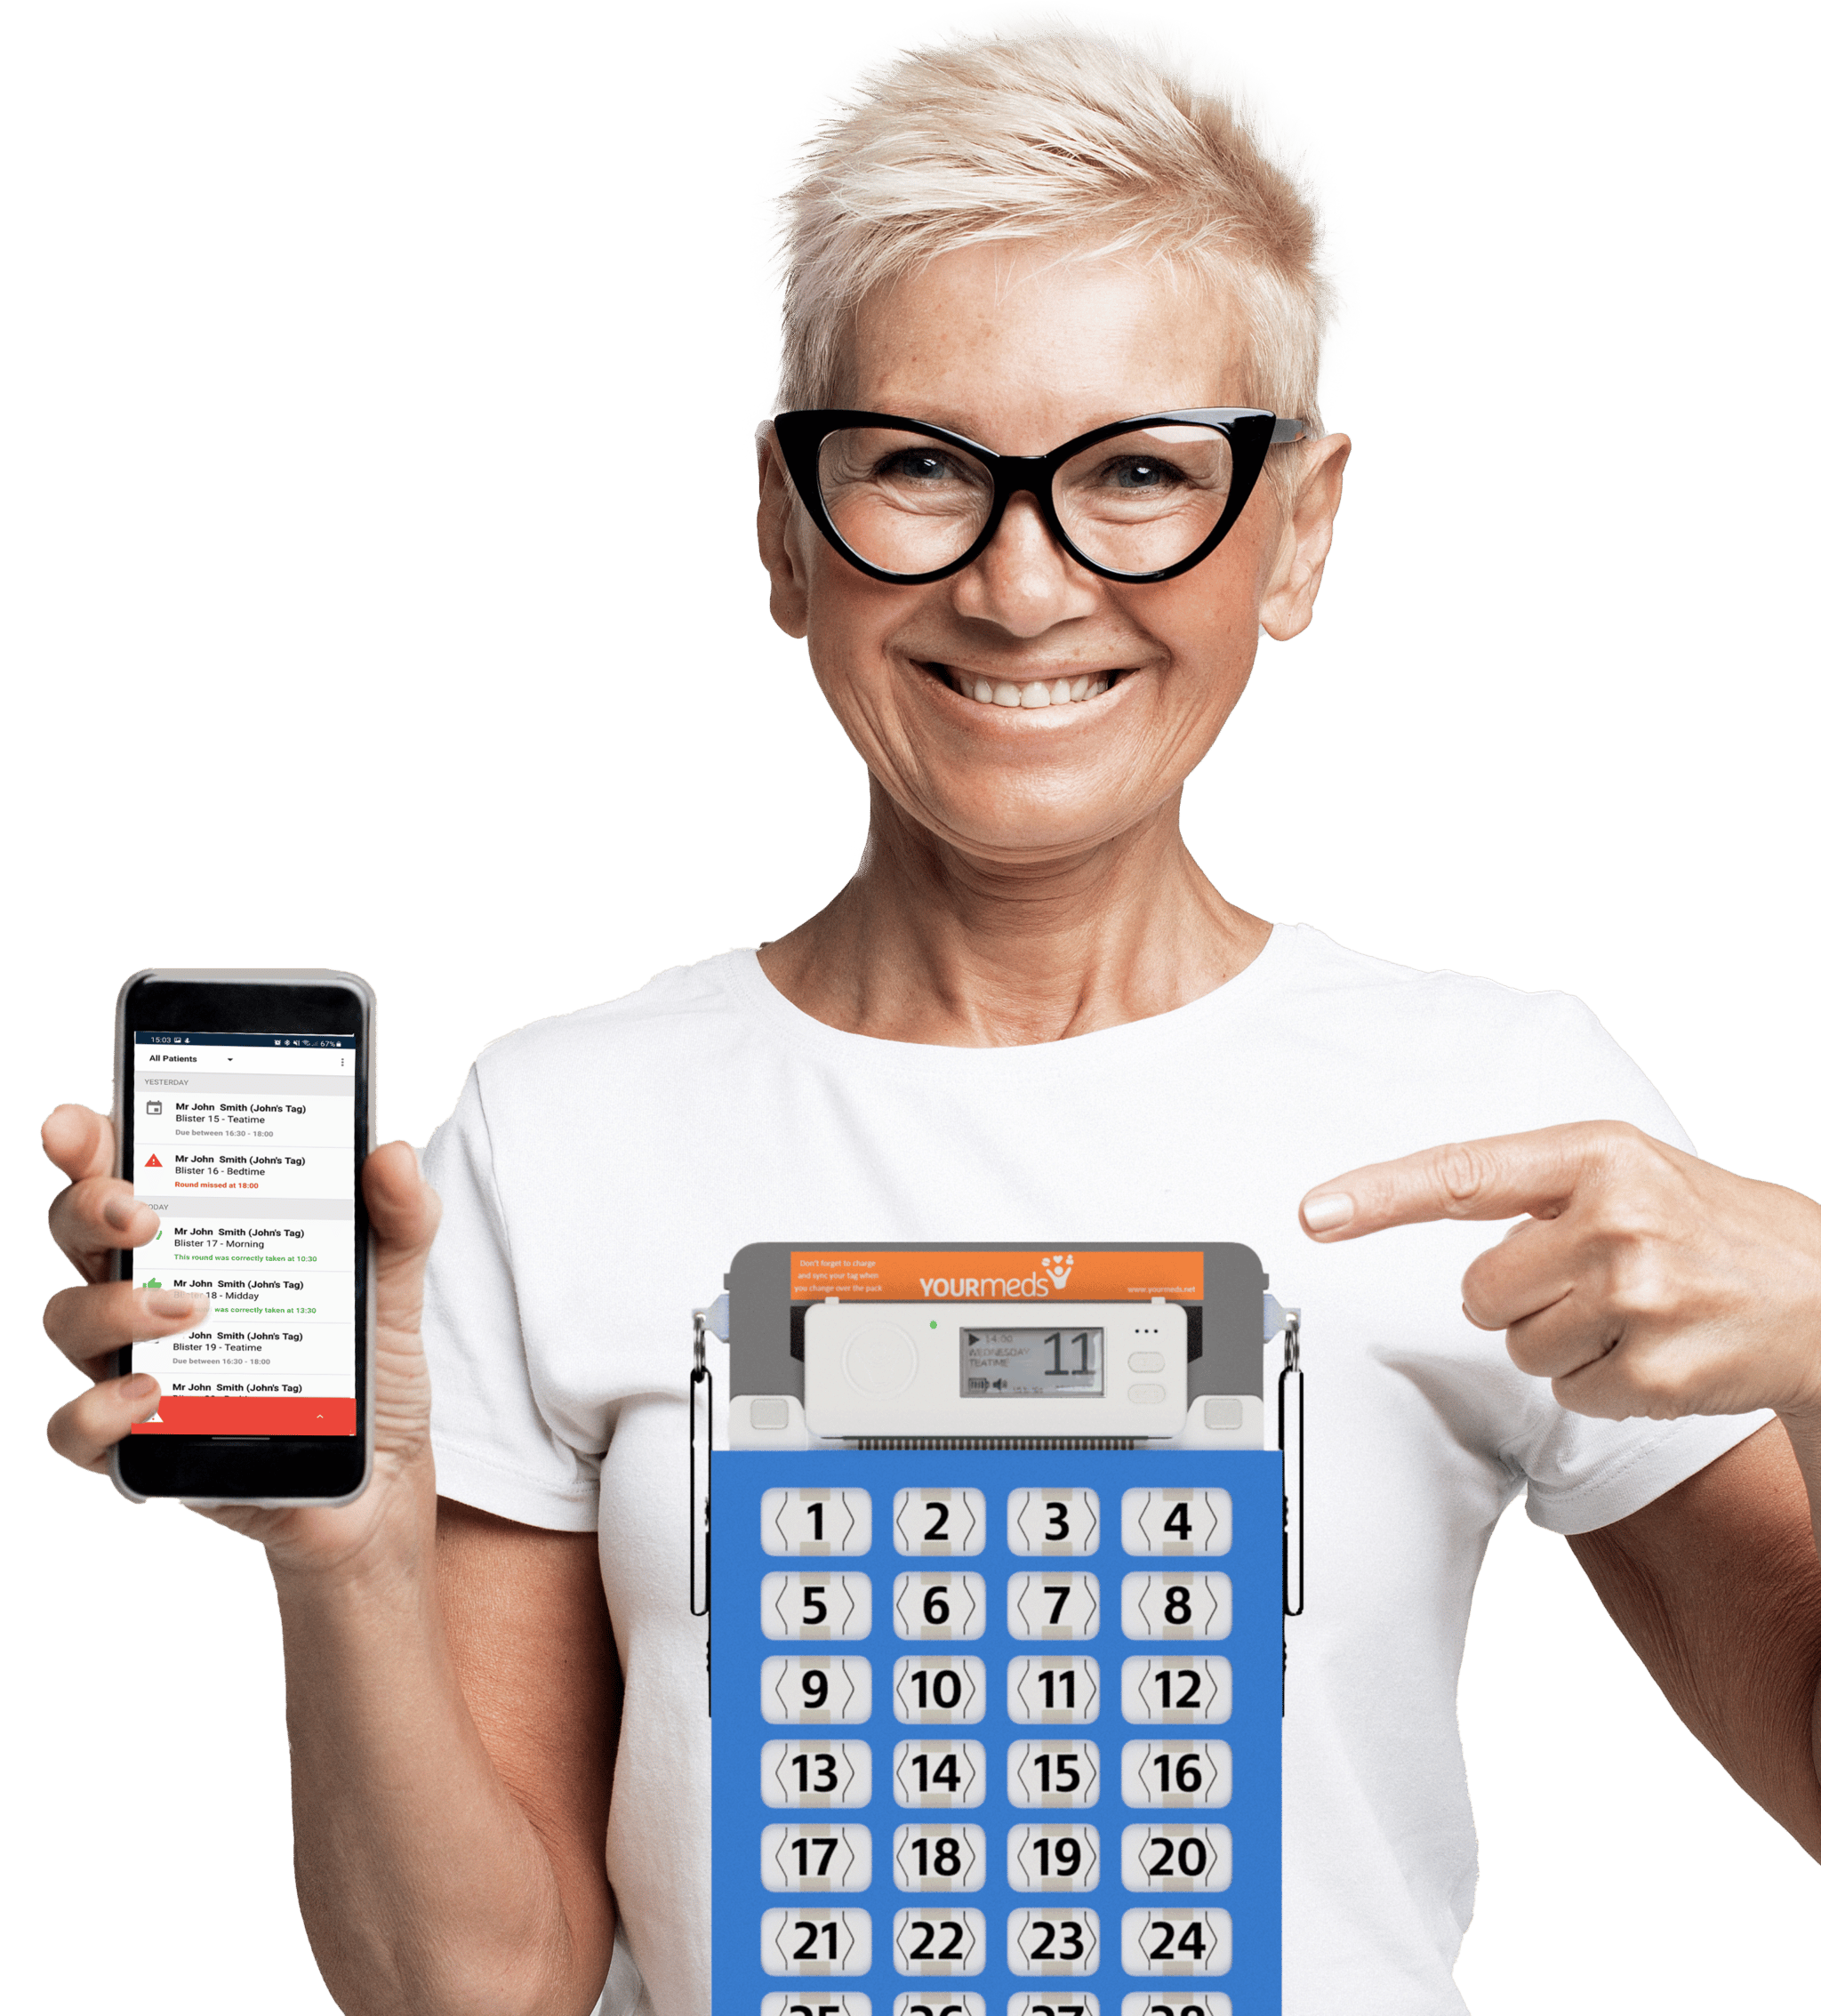 Señora feliz con gafas sosteniendo un iphone en una mano mostrando la aplicación yourmeds supporter y señalando el producto yourmeds switch con la otra mano.